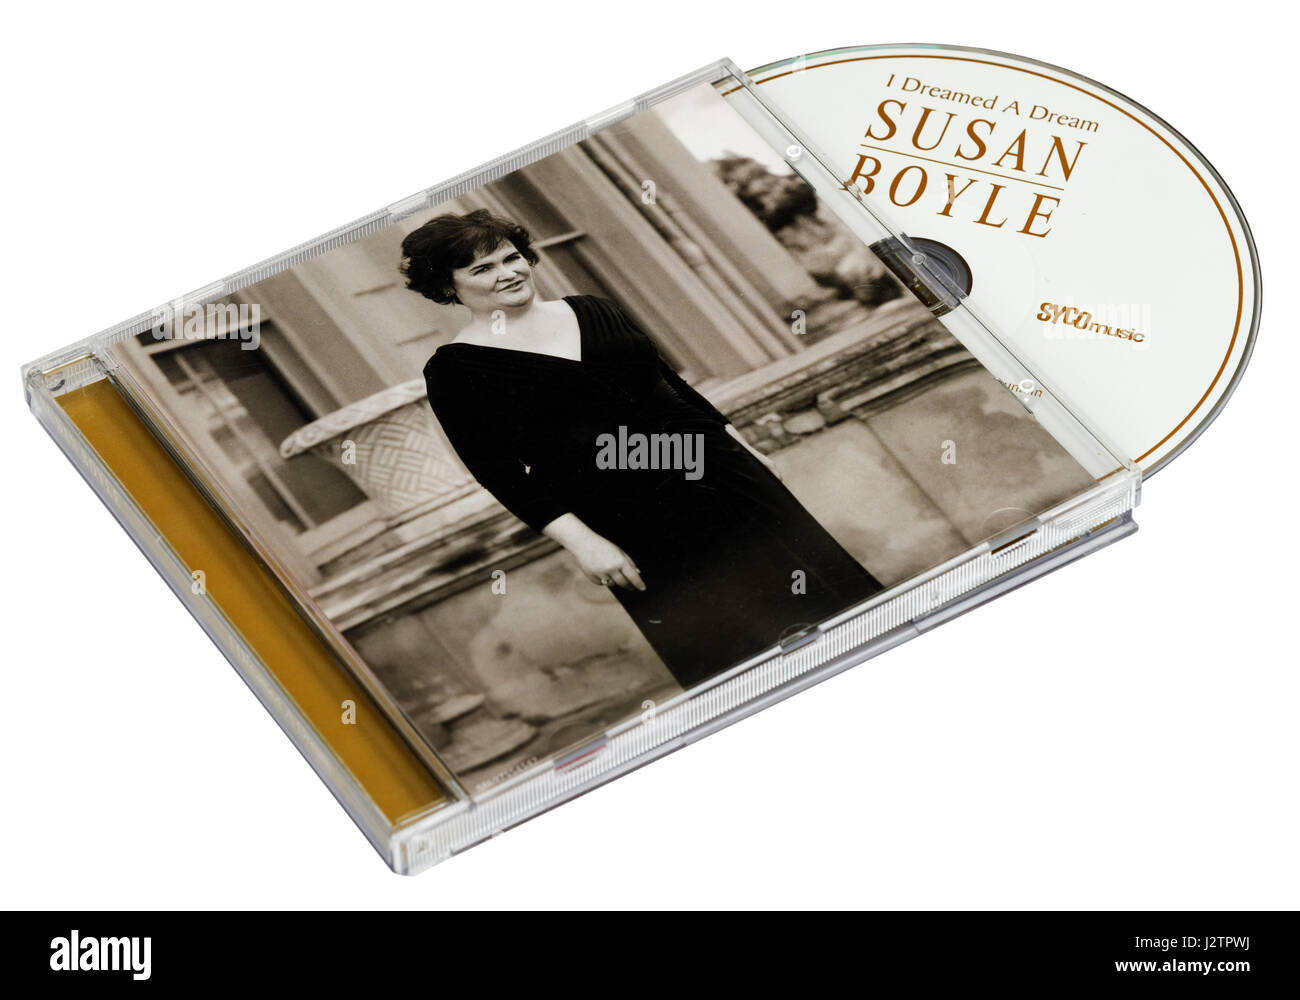 Ich träumte eine Traum-CD von Susan Boyle Stockfoto